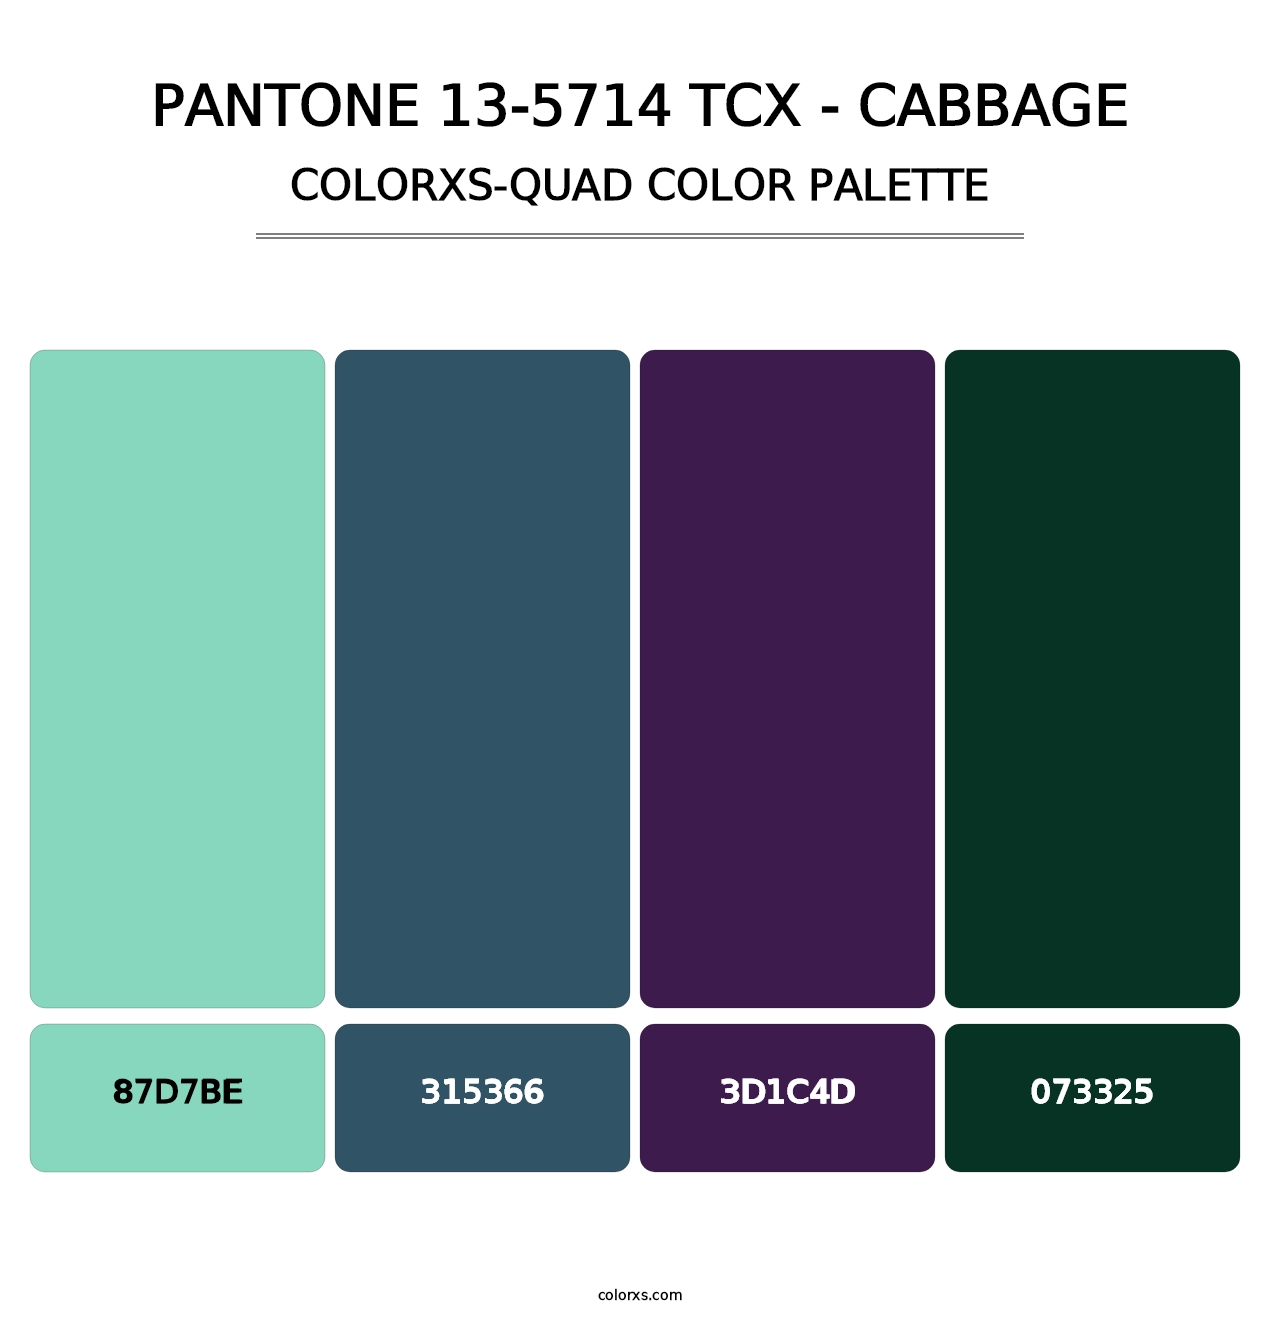 PANTONE 13-5714 TCX - Cabbage - Colorxs Quad Palette